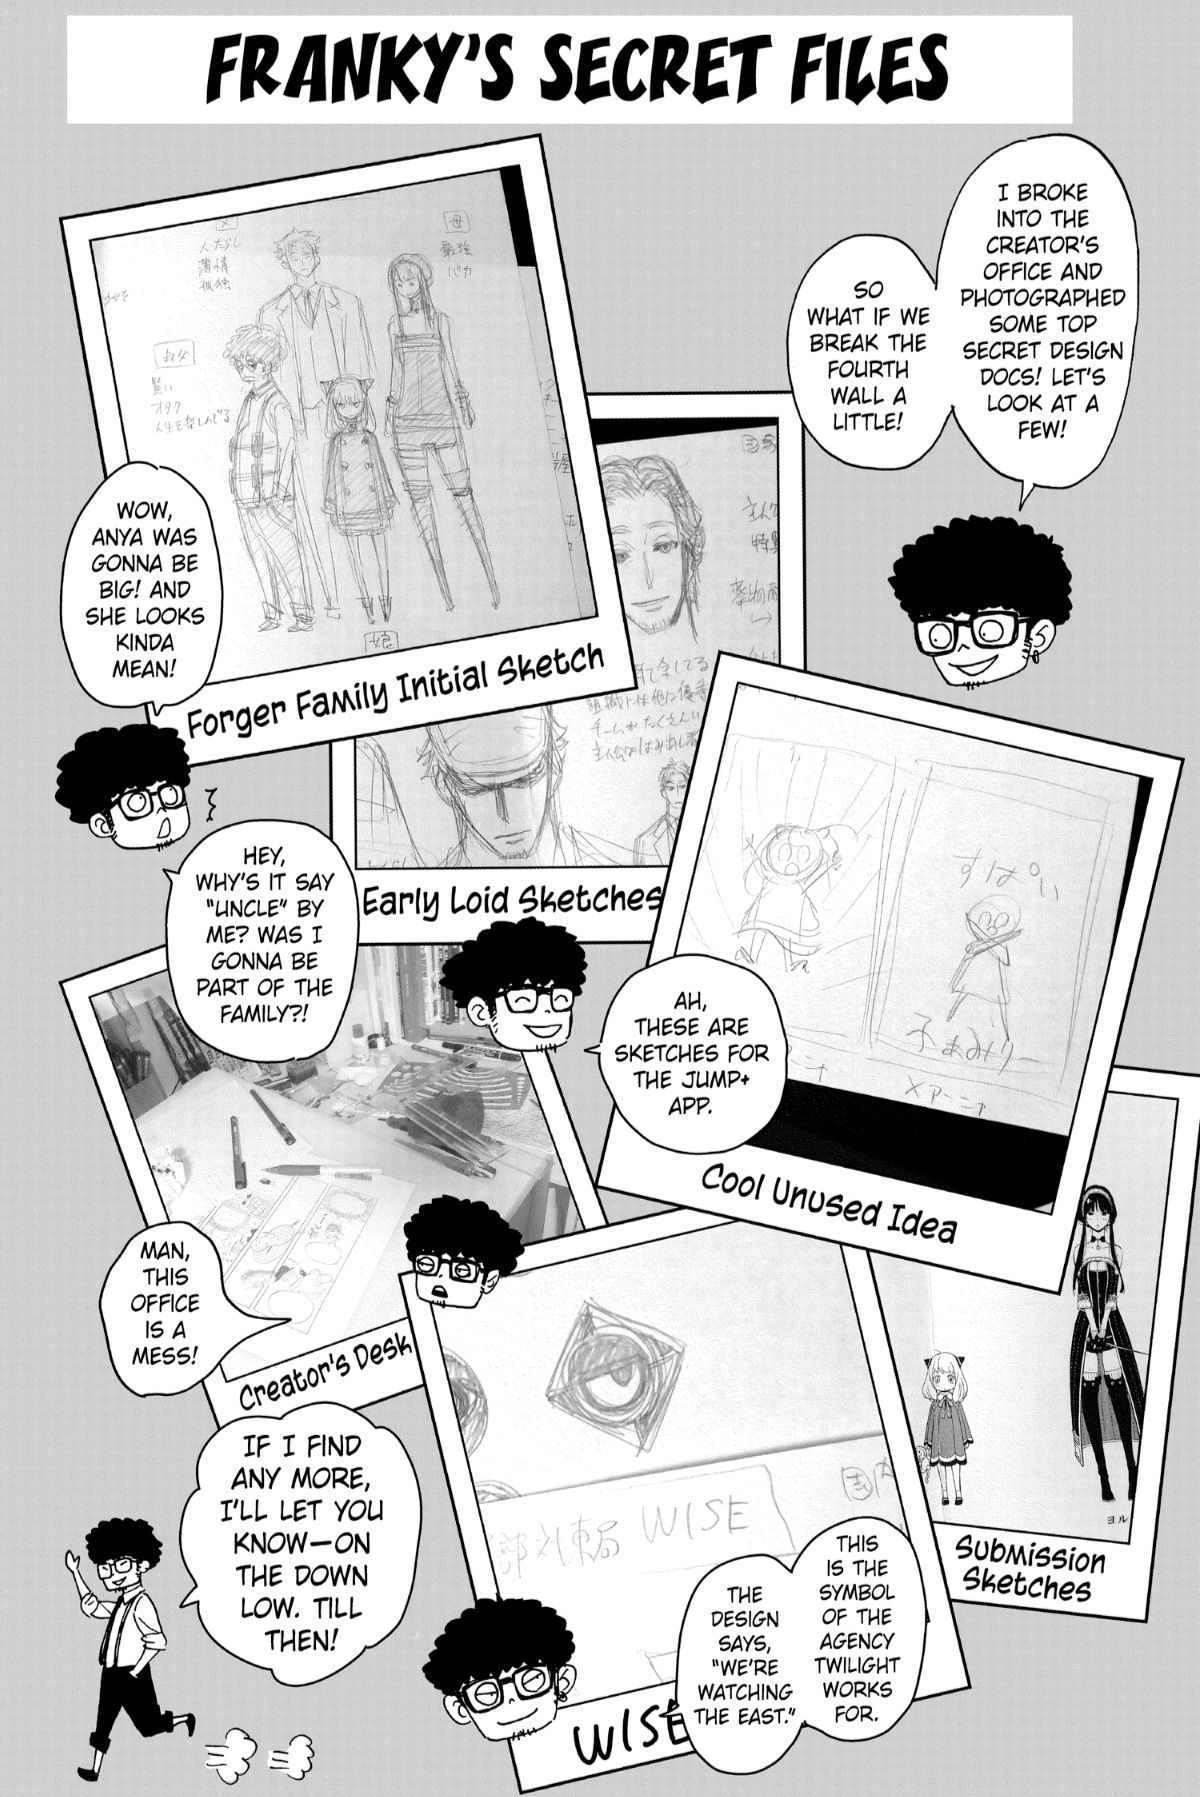 spy-x-family-vol-1-manga-original-sketches